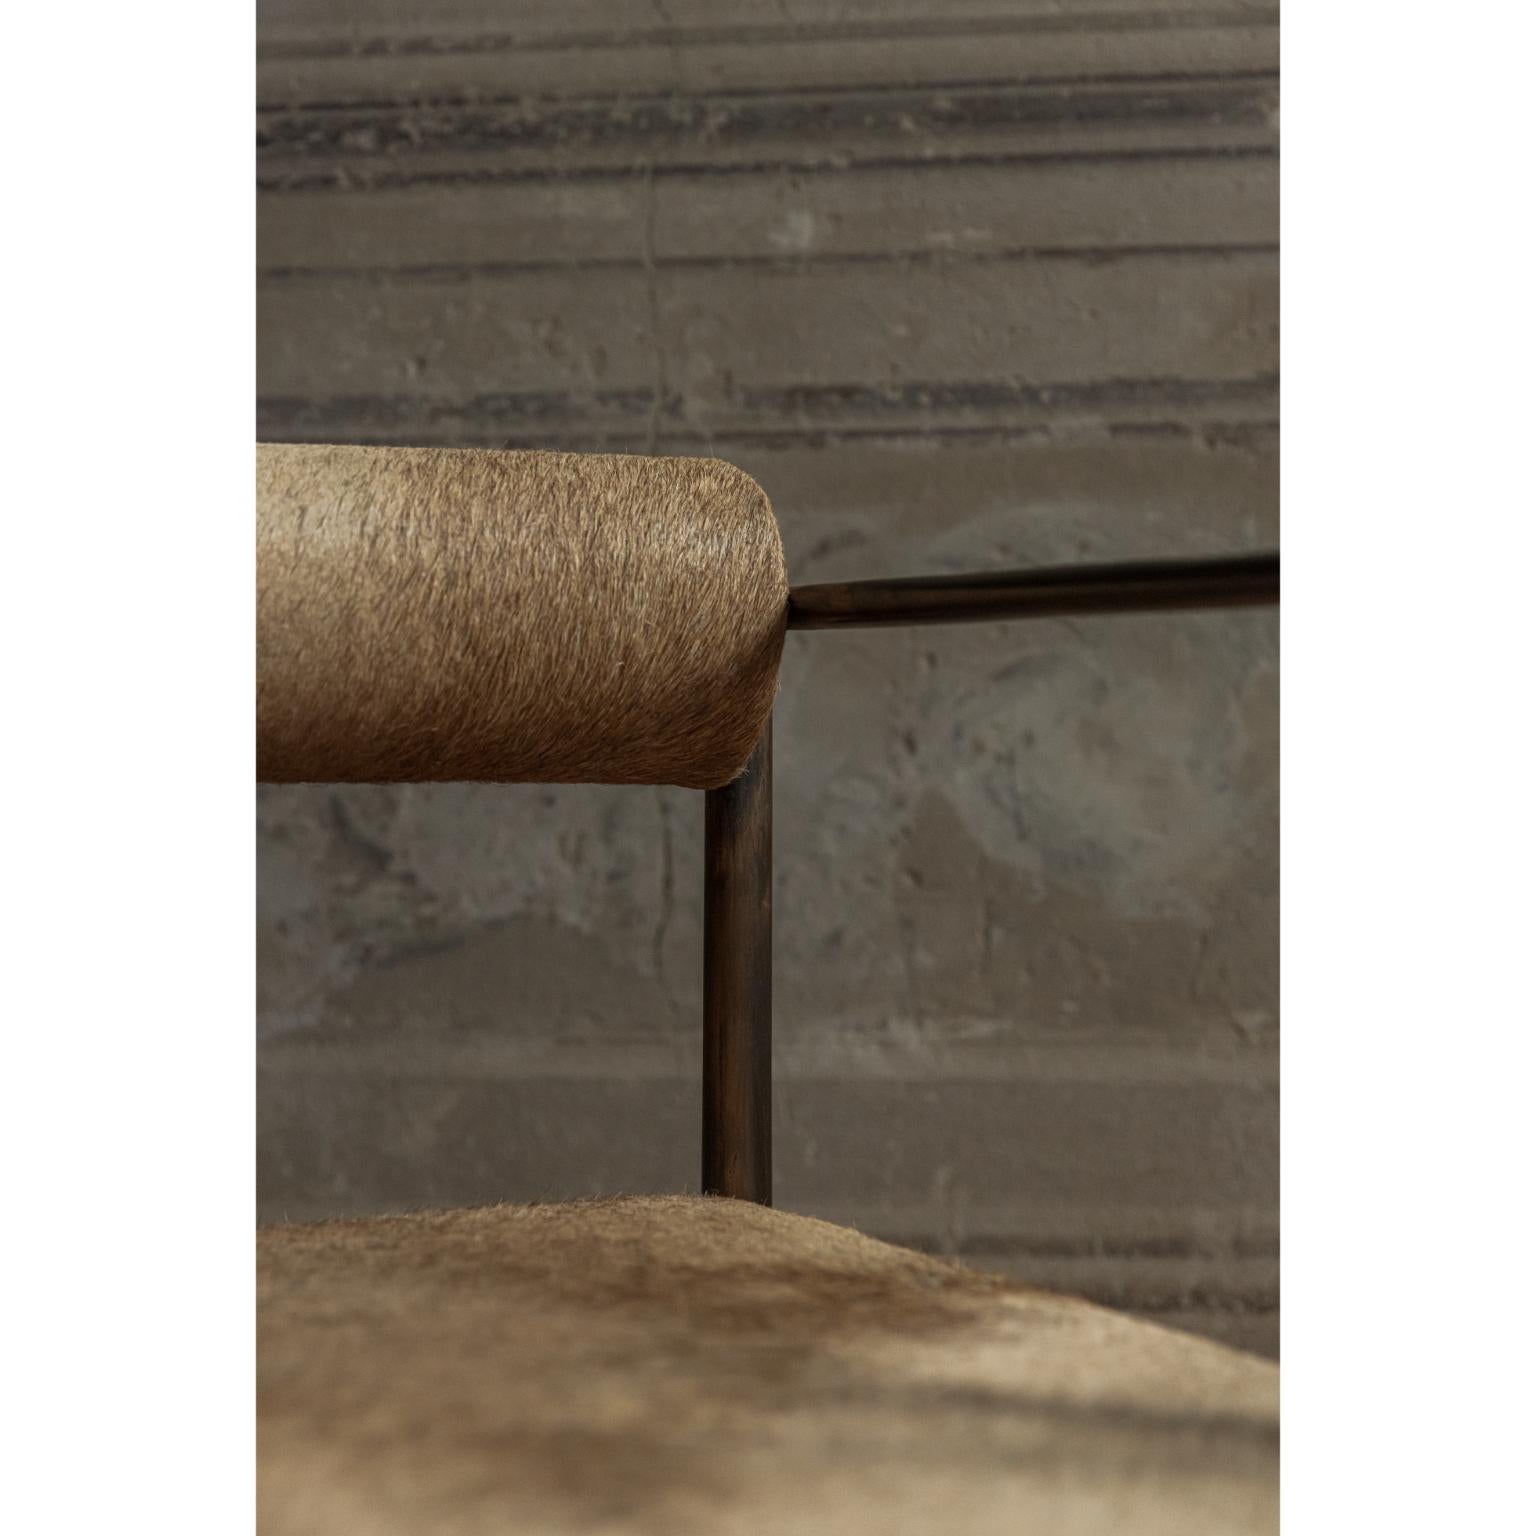 Quadratischer Alchemie-Stuhl von Rick Owens
Abmessungen: L 60 x B 60 x H 81 cm
MATERIALIEN: Bronze, Kamelhaut
Gewicht: 43 kg

Sowohl in heller als auch in dunkler Farbe erhältlich.

Rick Owens ist ein in Kalifornien geborener Mode- und